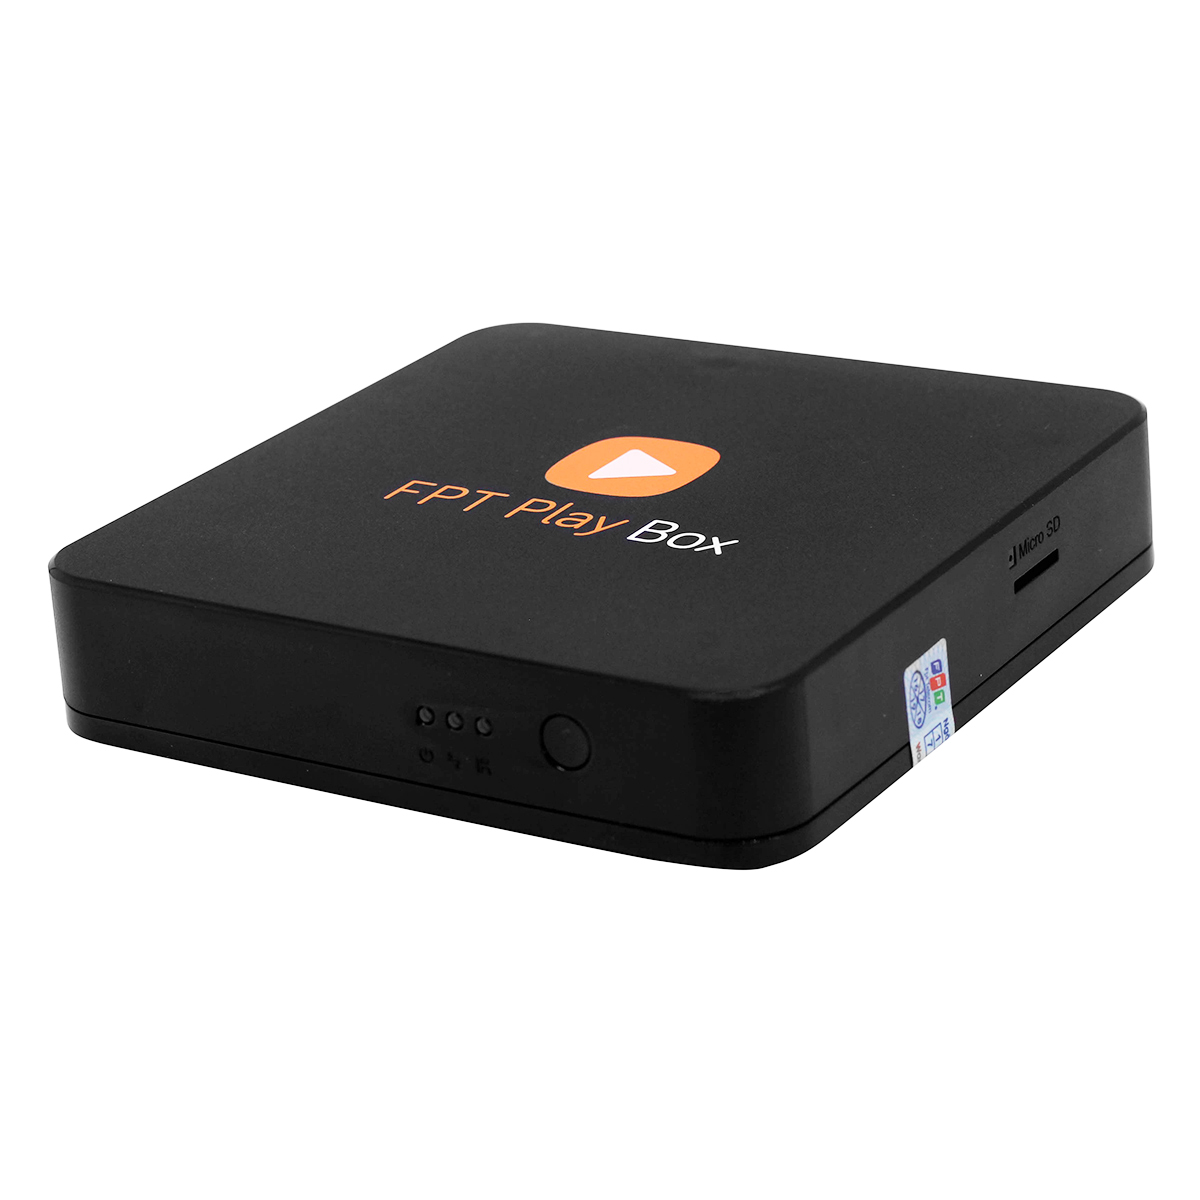 FPT Play Box – Box Truyền Hình Internet - Hàng chính hãng